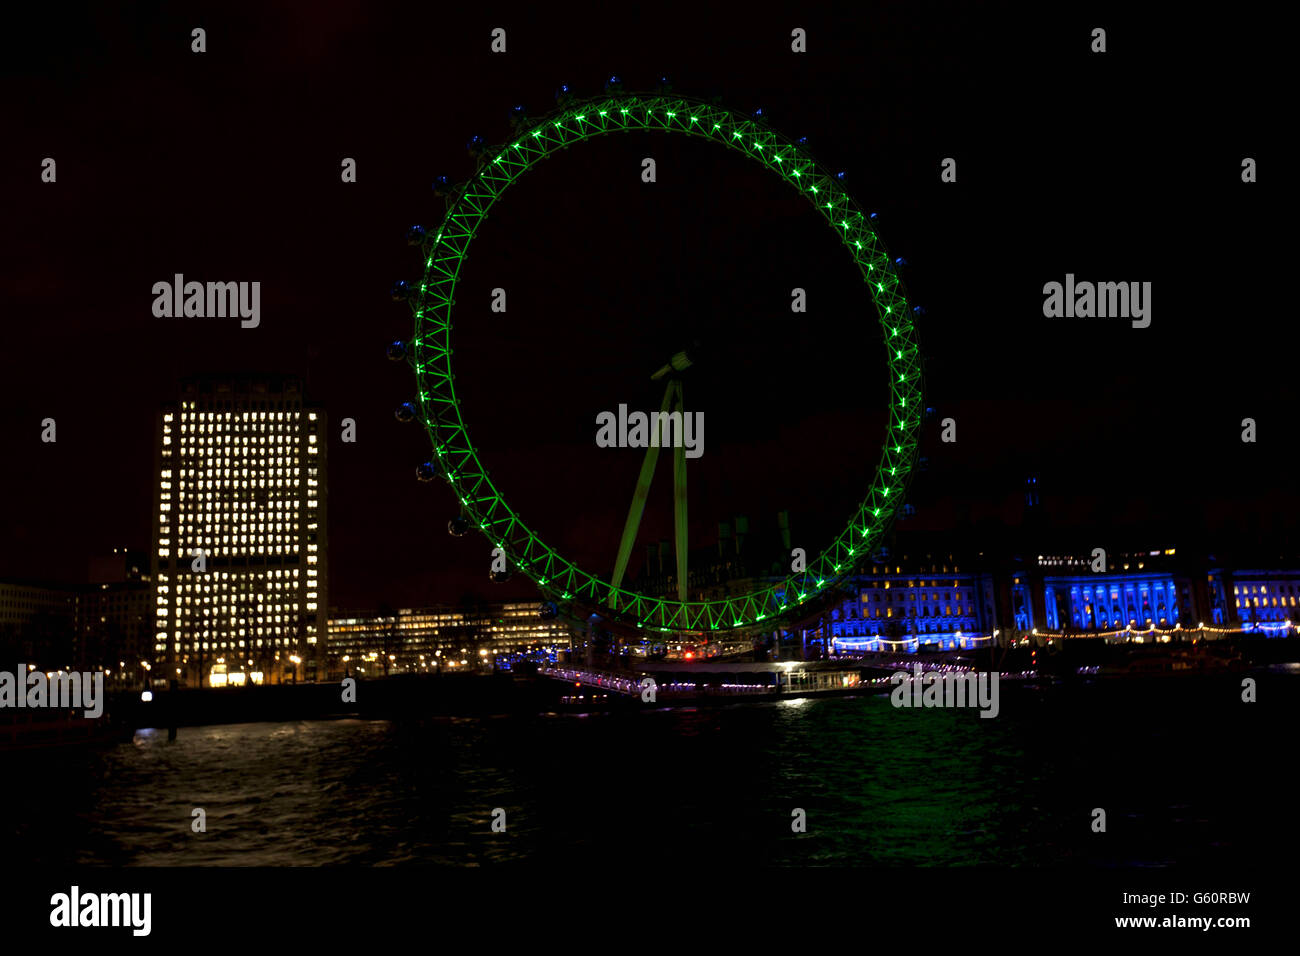 El EDF London Eye está iluminado en verde por Tourism Ireland para celebrar el día de San Patricio en Londres. Foto de stock